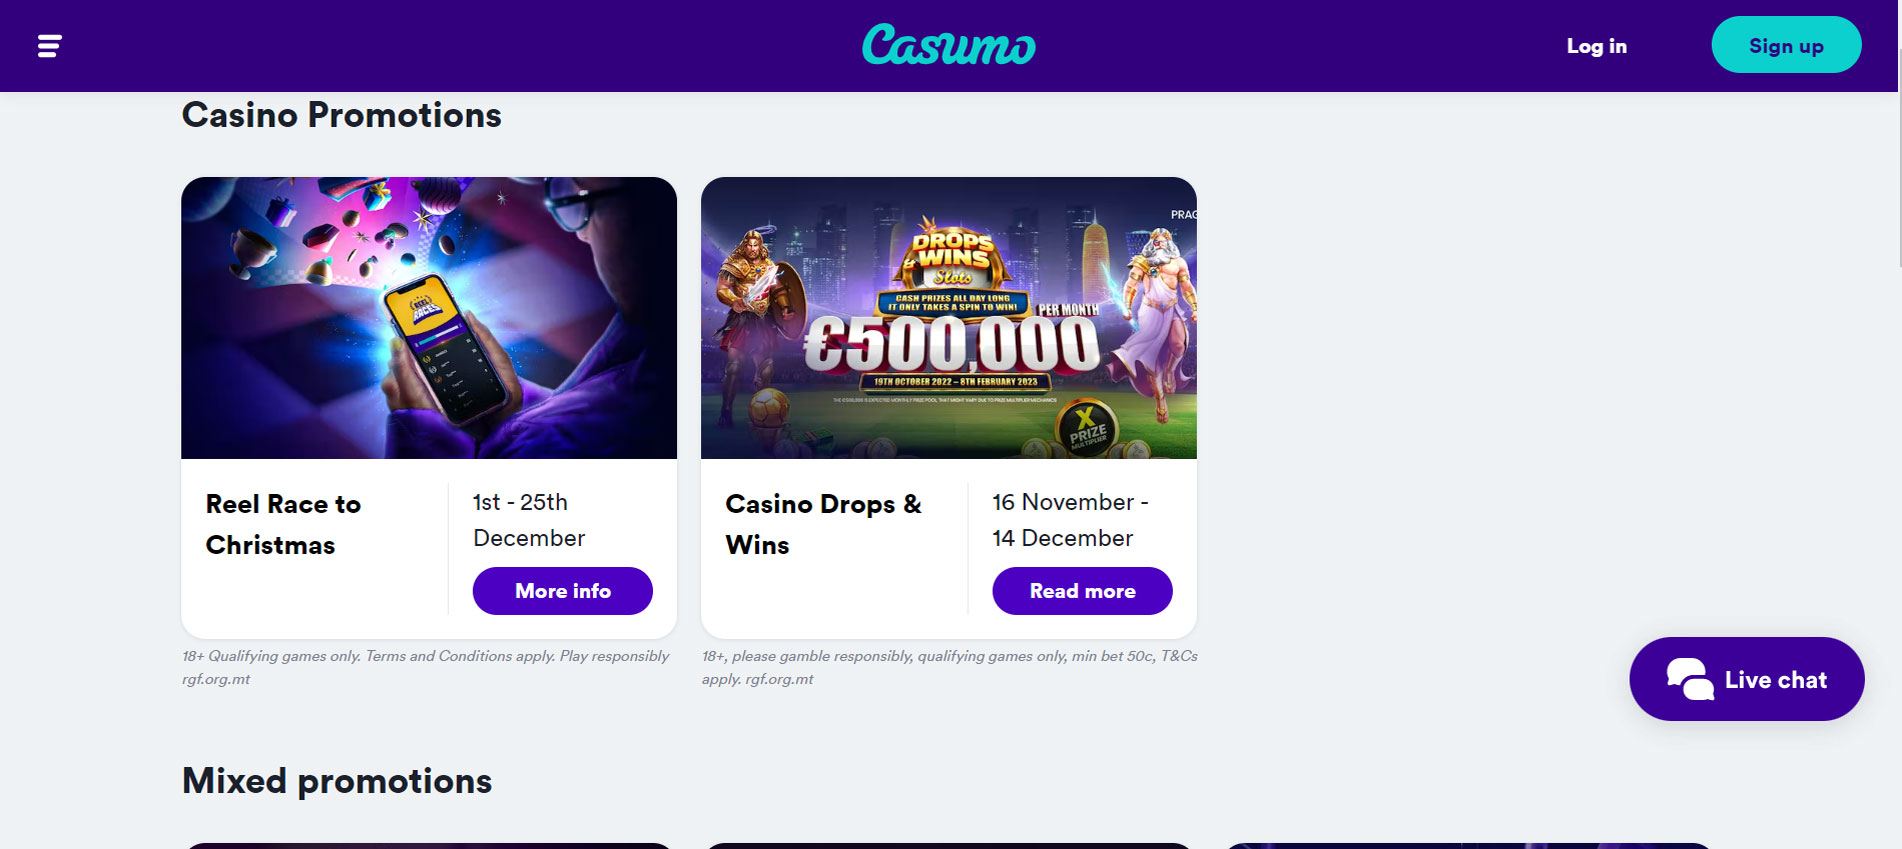 Casumo Casino Promotions